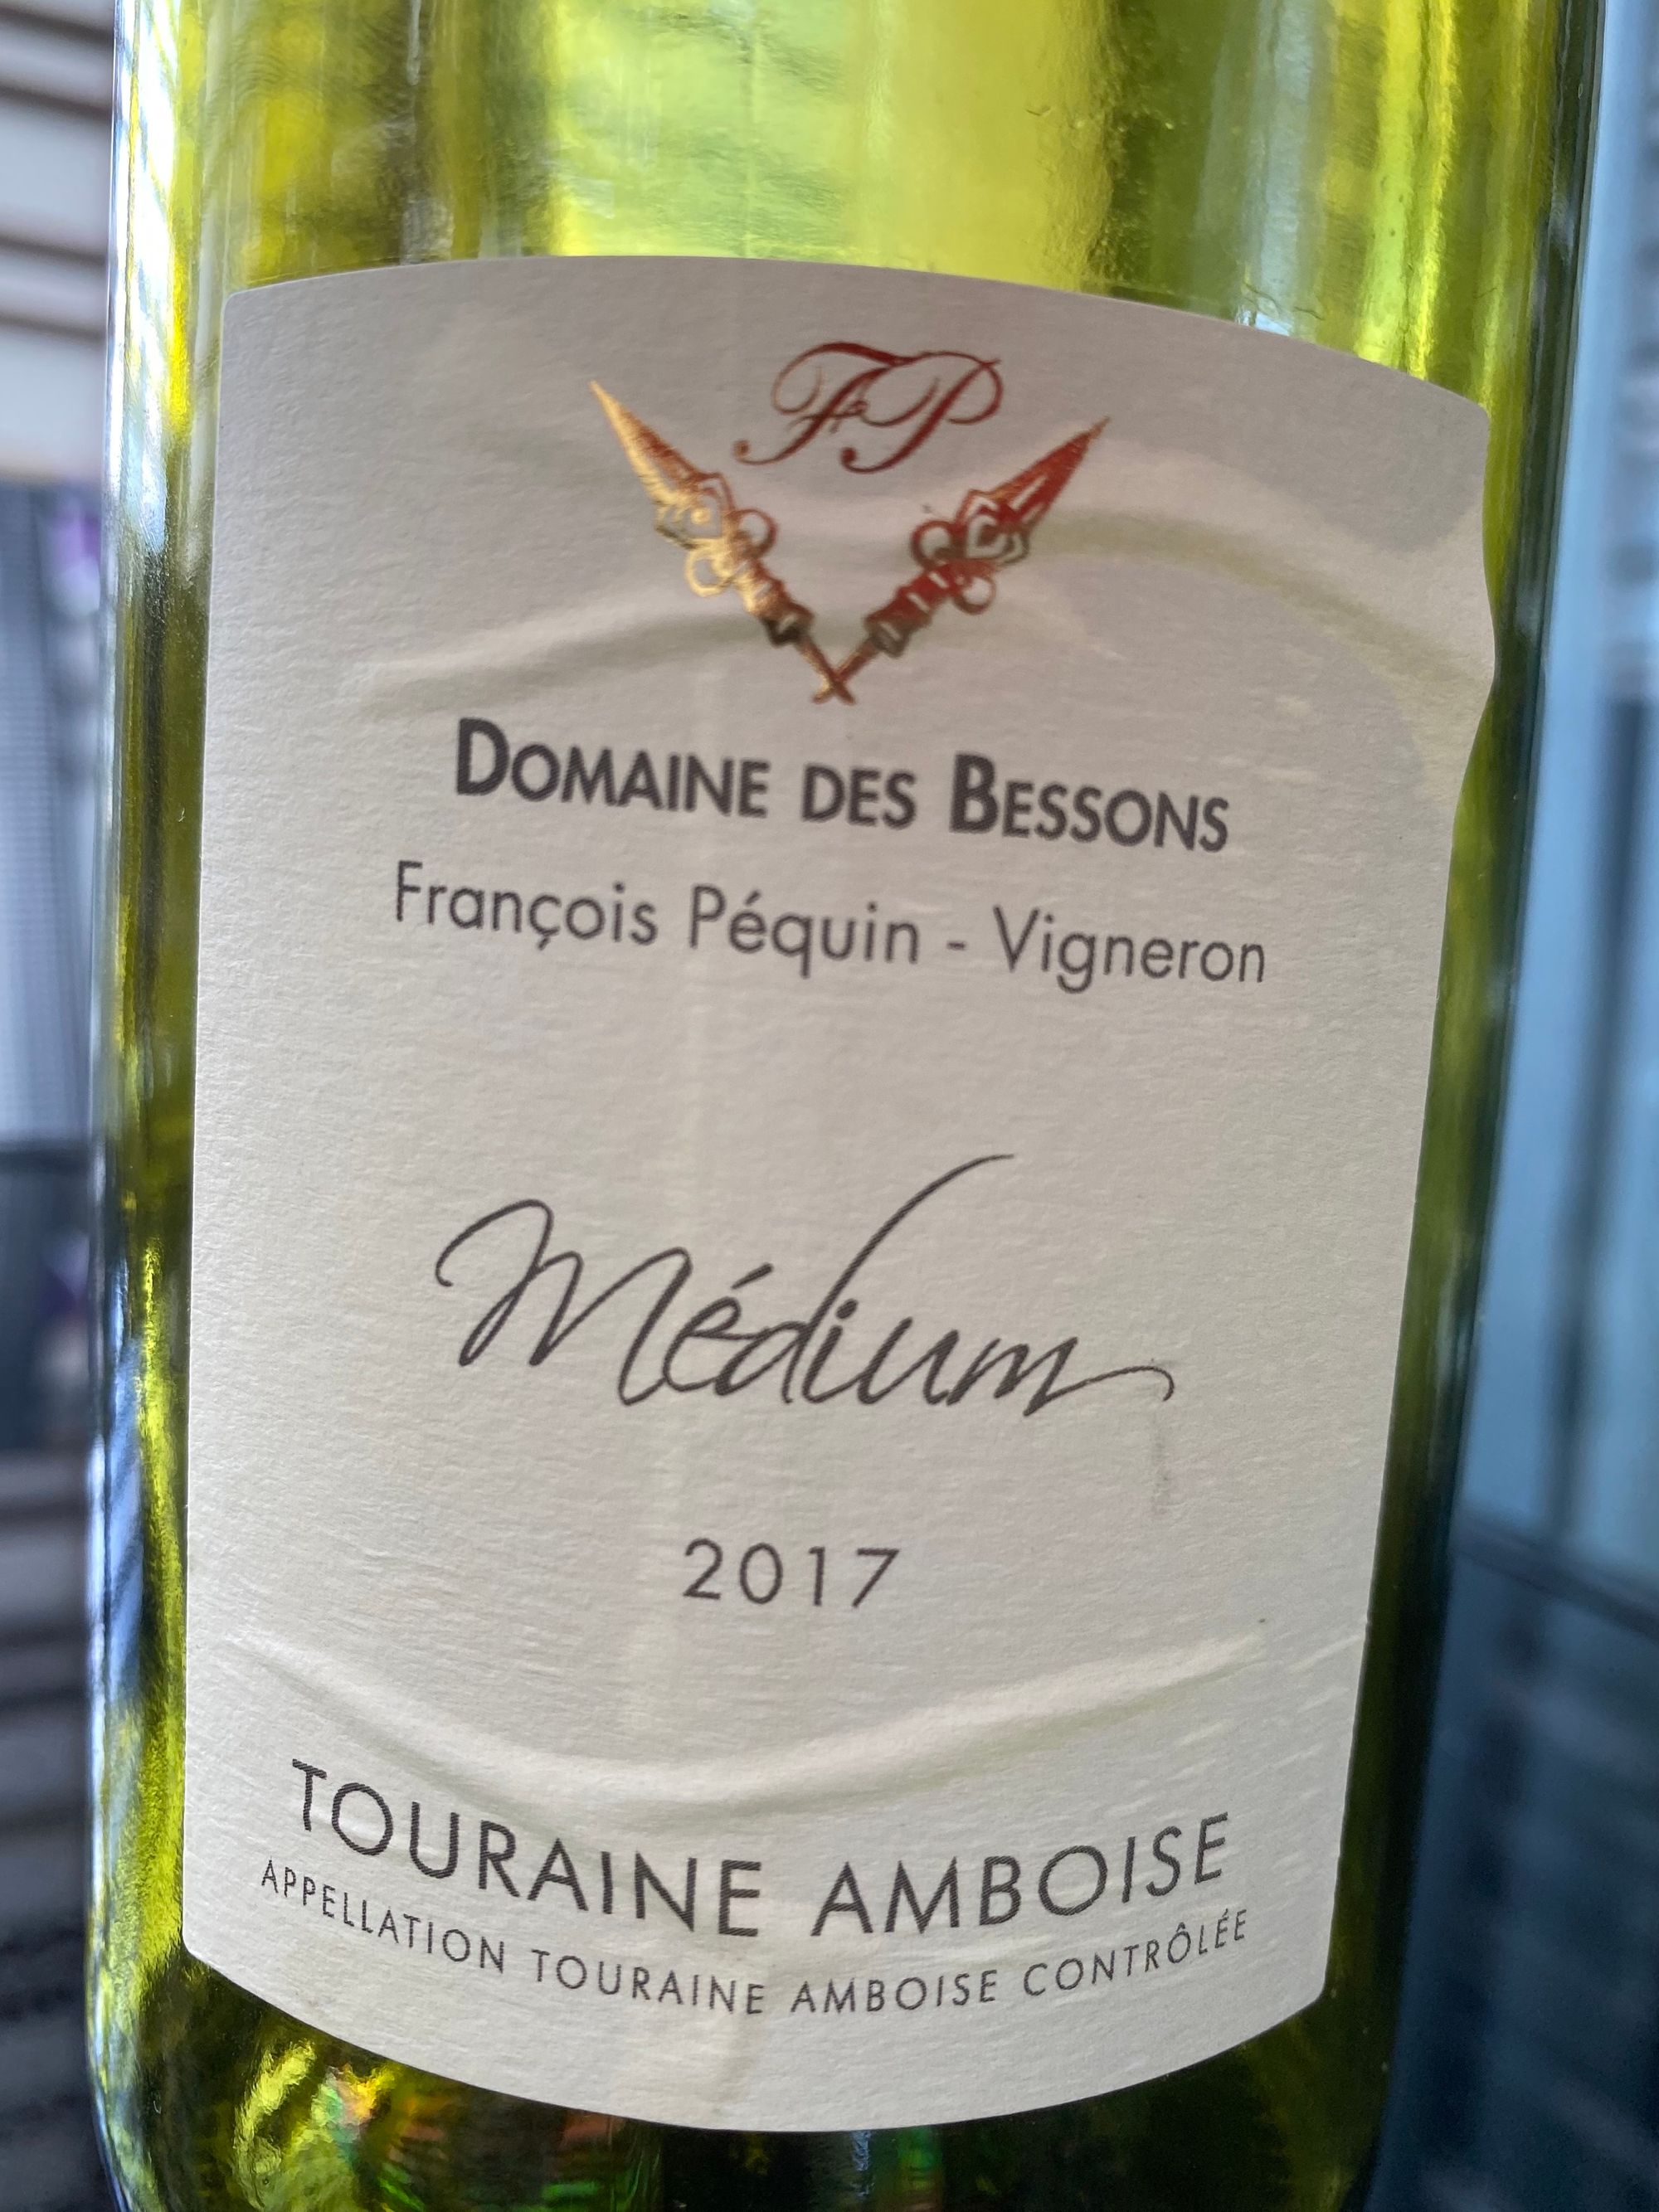 Domaine Des Bessons Médium 2017 - AOC Touraine Amboise - front label